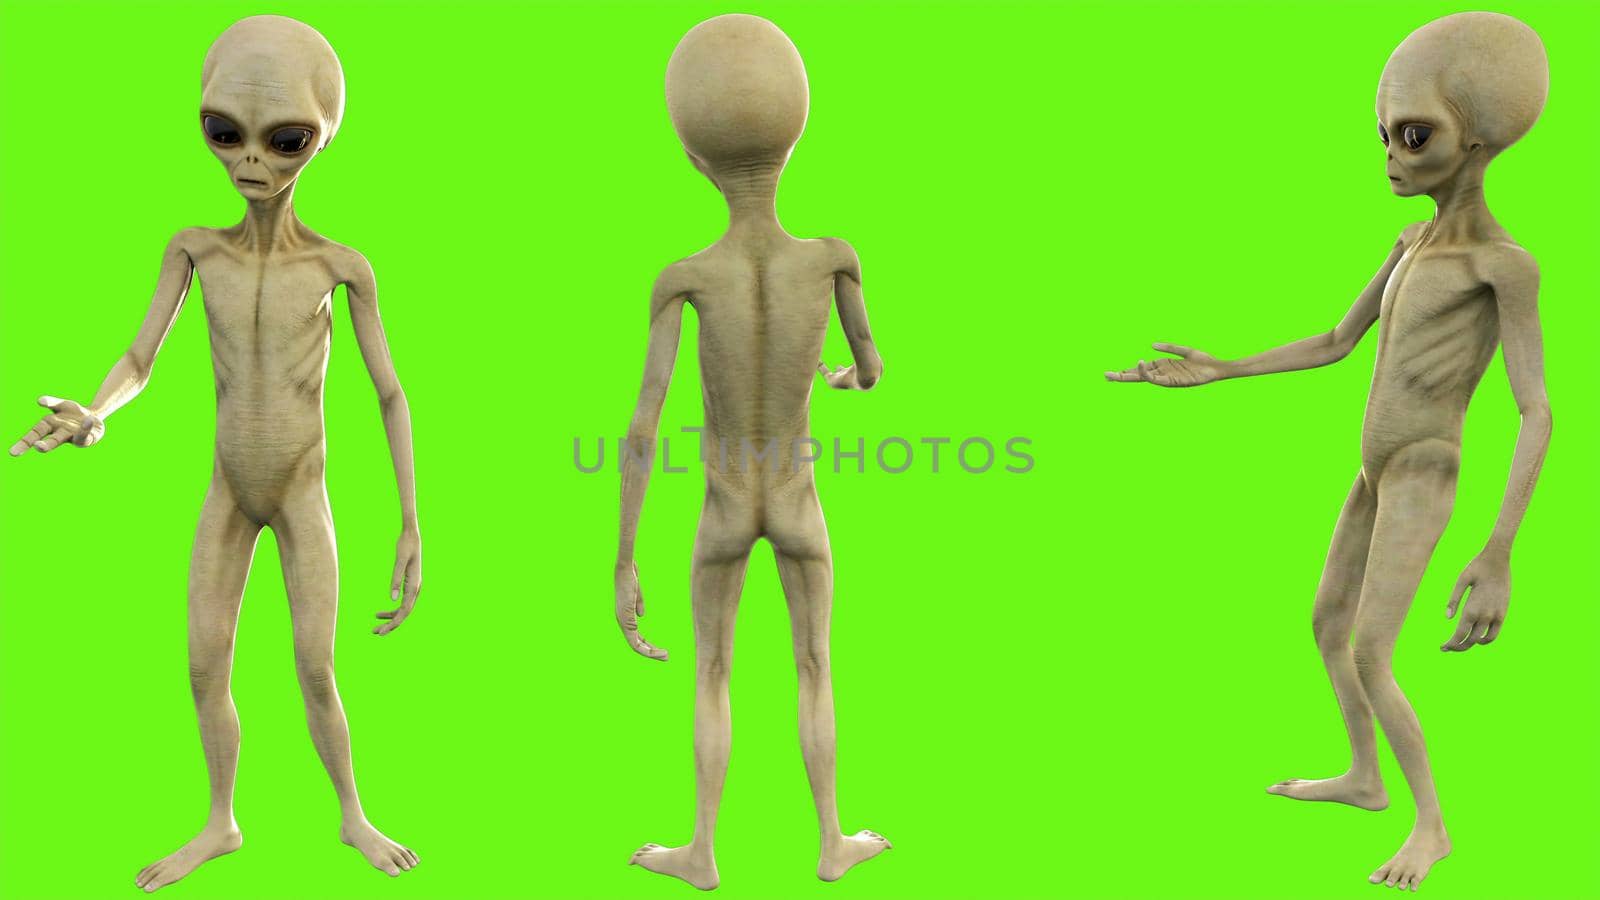 Alien talks on green screen. 3D rendering by designprojects